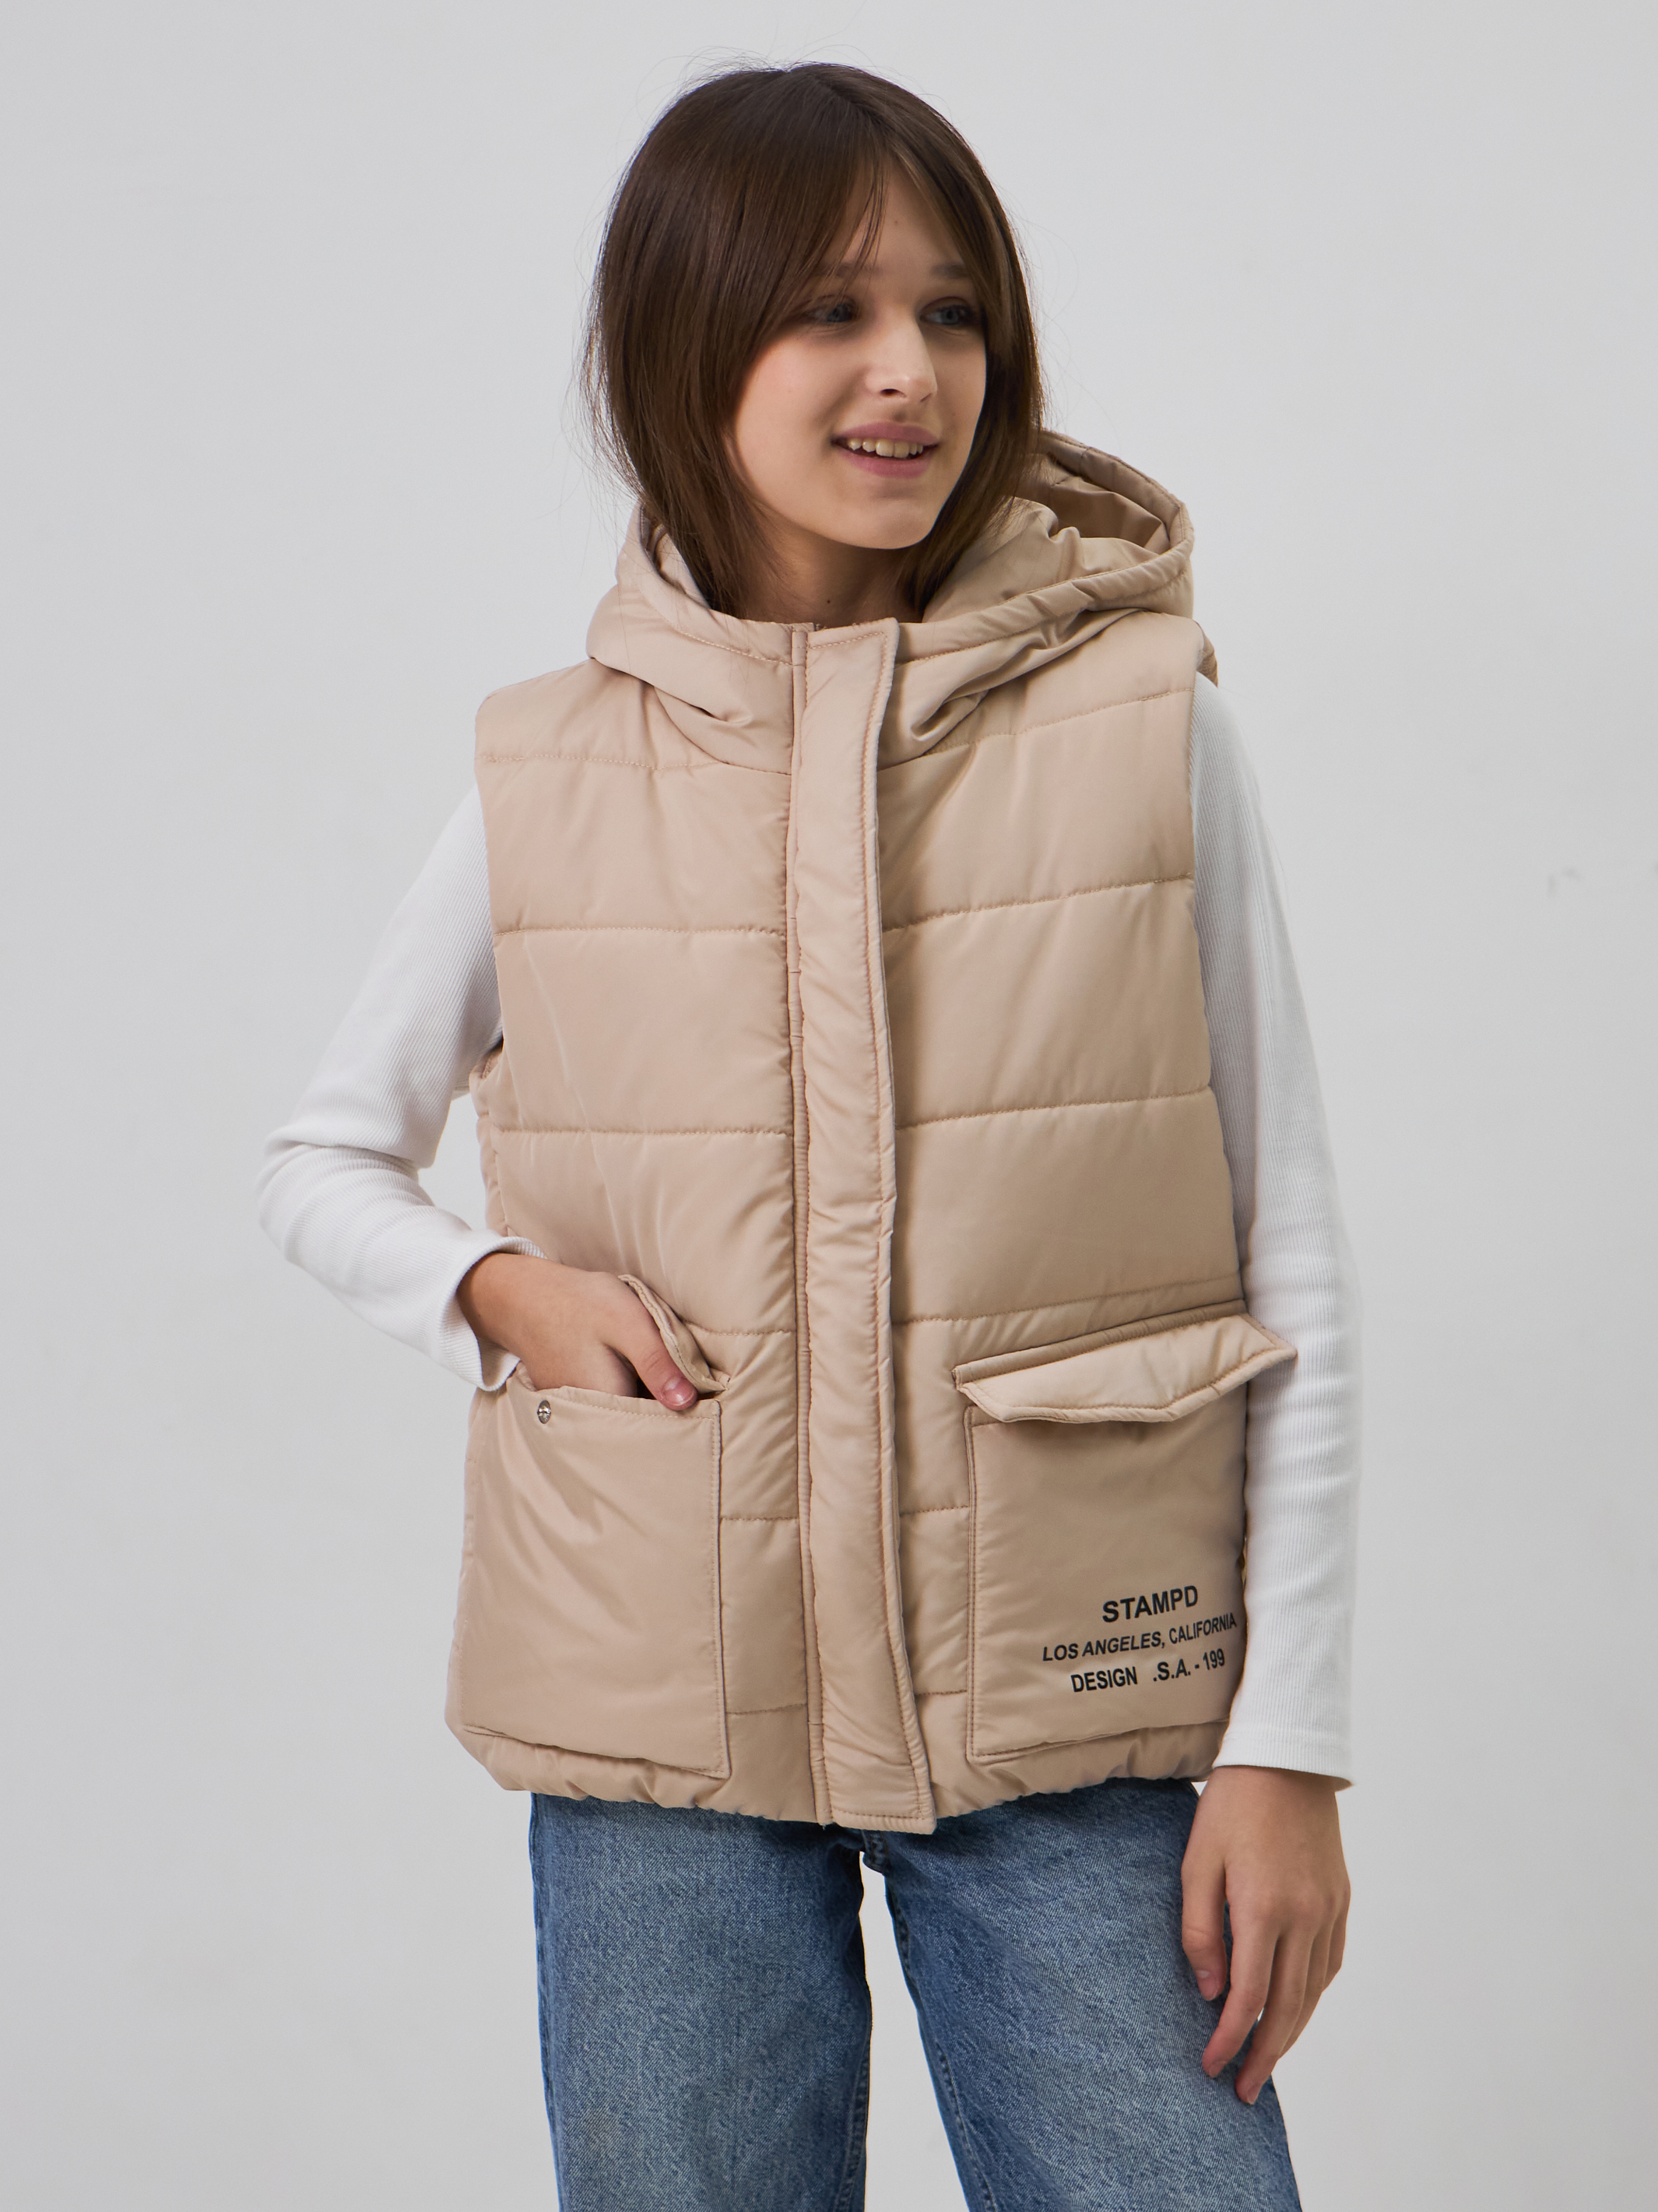 Женское зимнее пальто | AliExpress